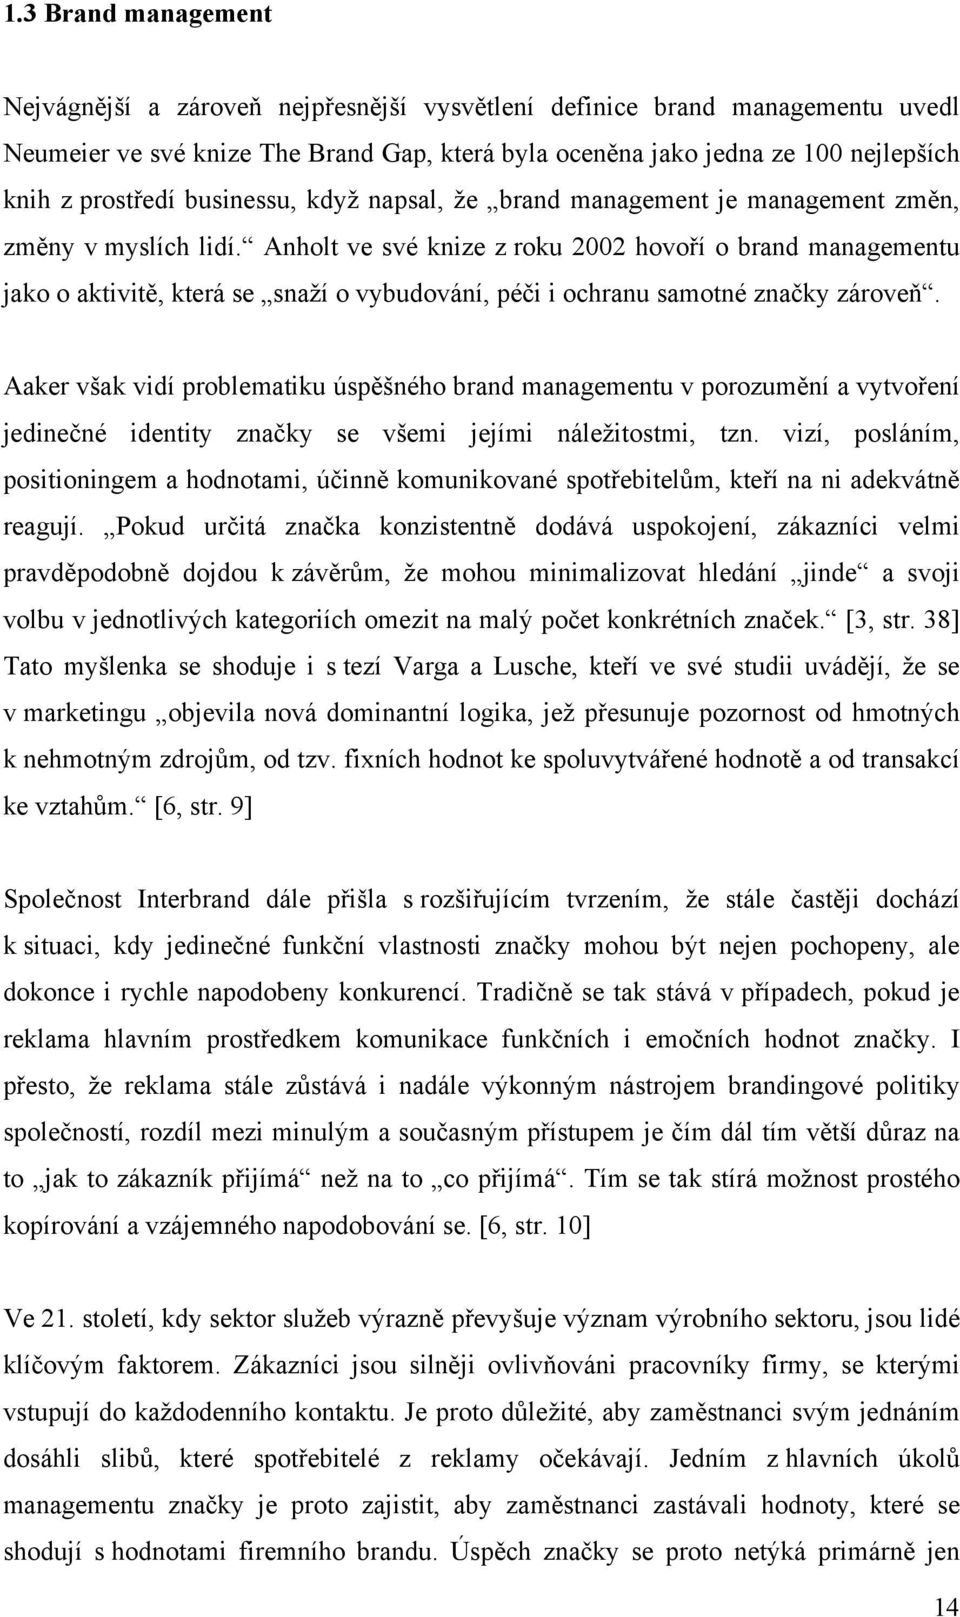 Anholt ve své knize z roku 2002 hovoří o brand managementu jako o aktivitě, která se snaží o vybudování, péči i ochranu samotné značky zároveň.